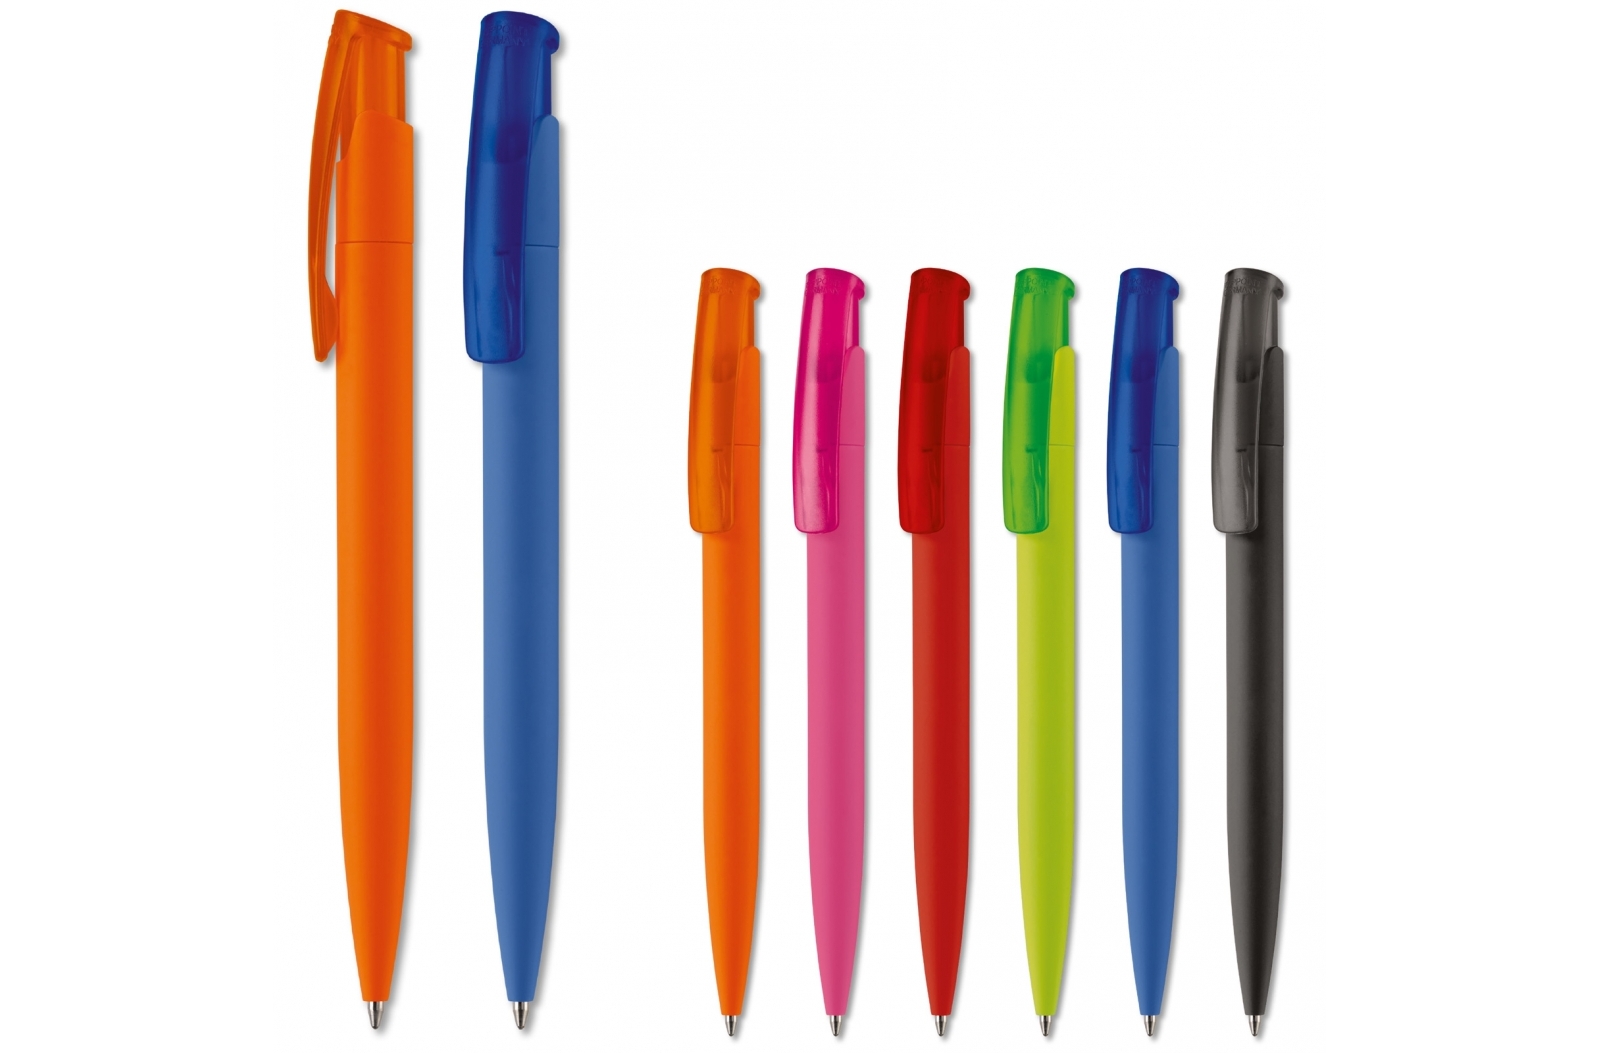 Stift mit Soft-Touch-Finish, hergestellt in Deutschland - Haslemere